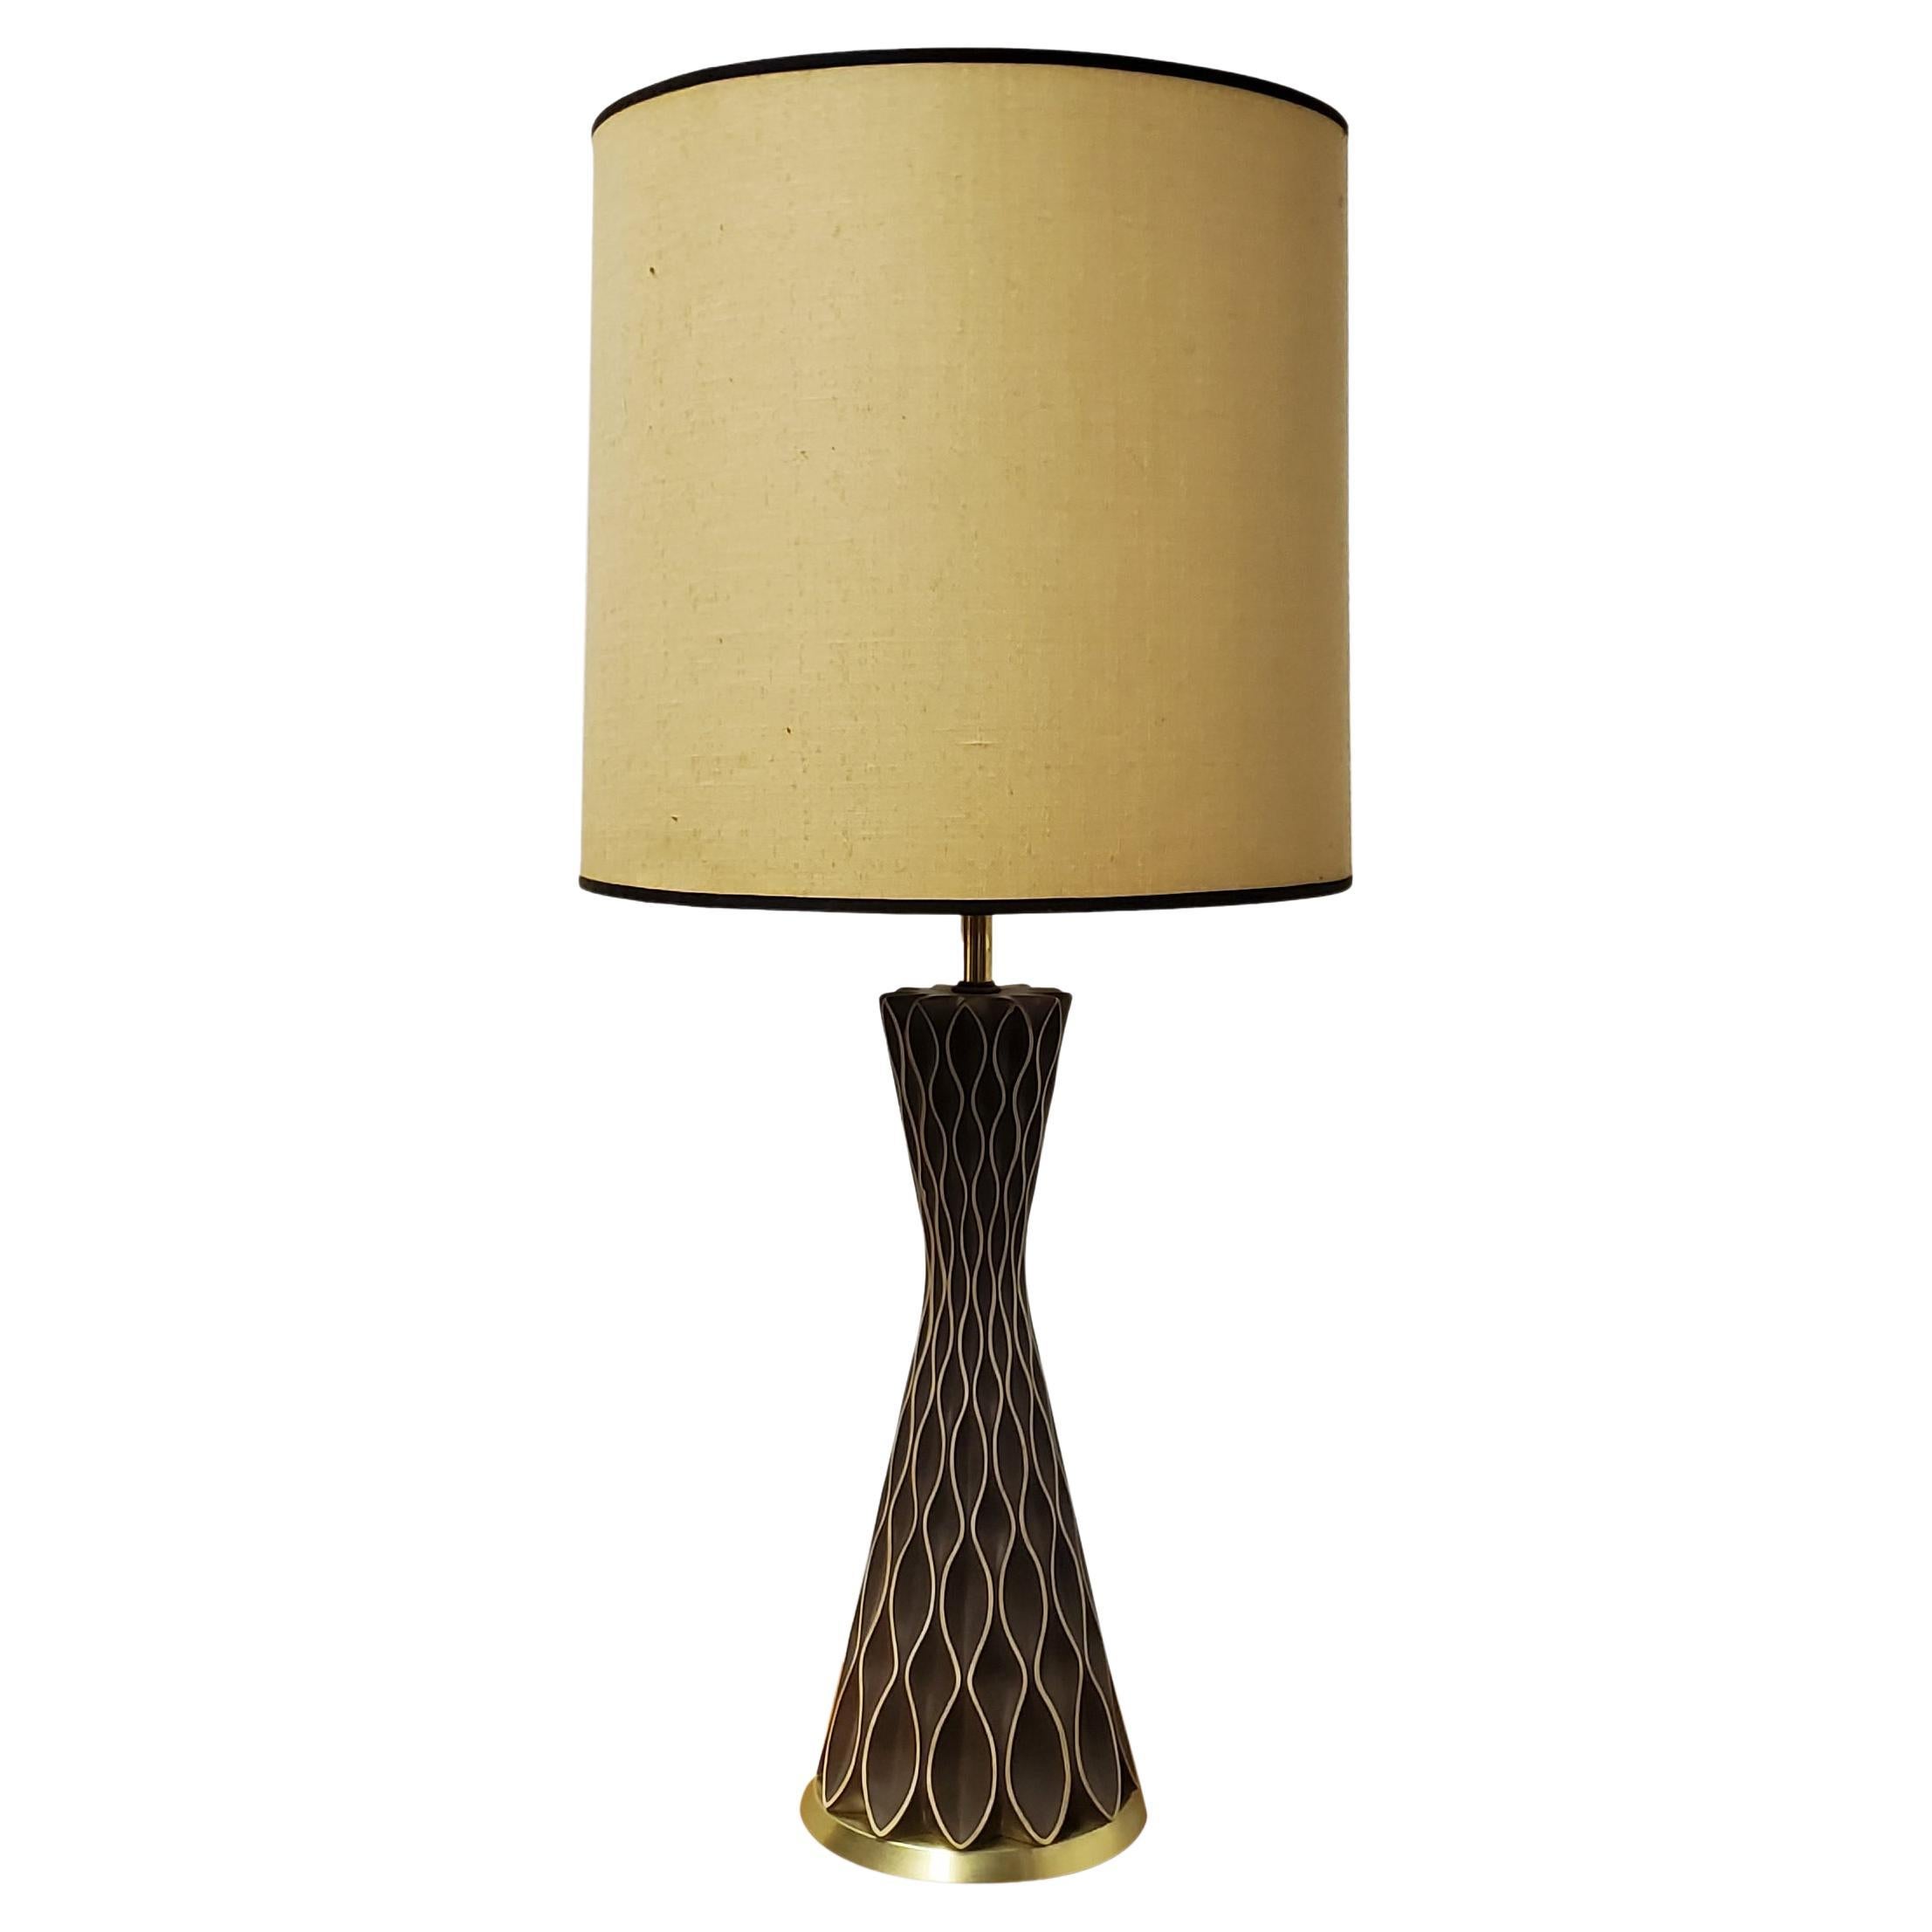 Gerald Thurston For Lightolier Honeycomb Table Lamp 